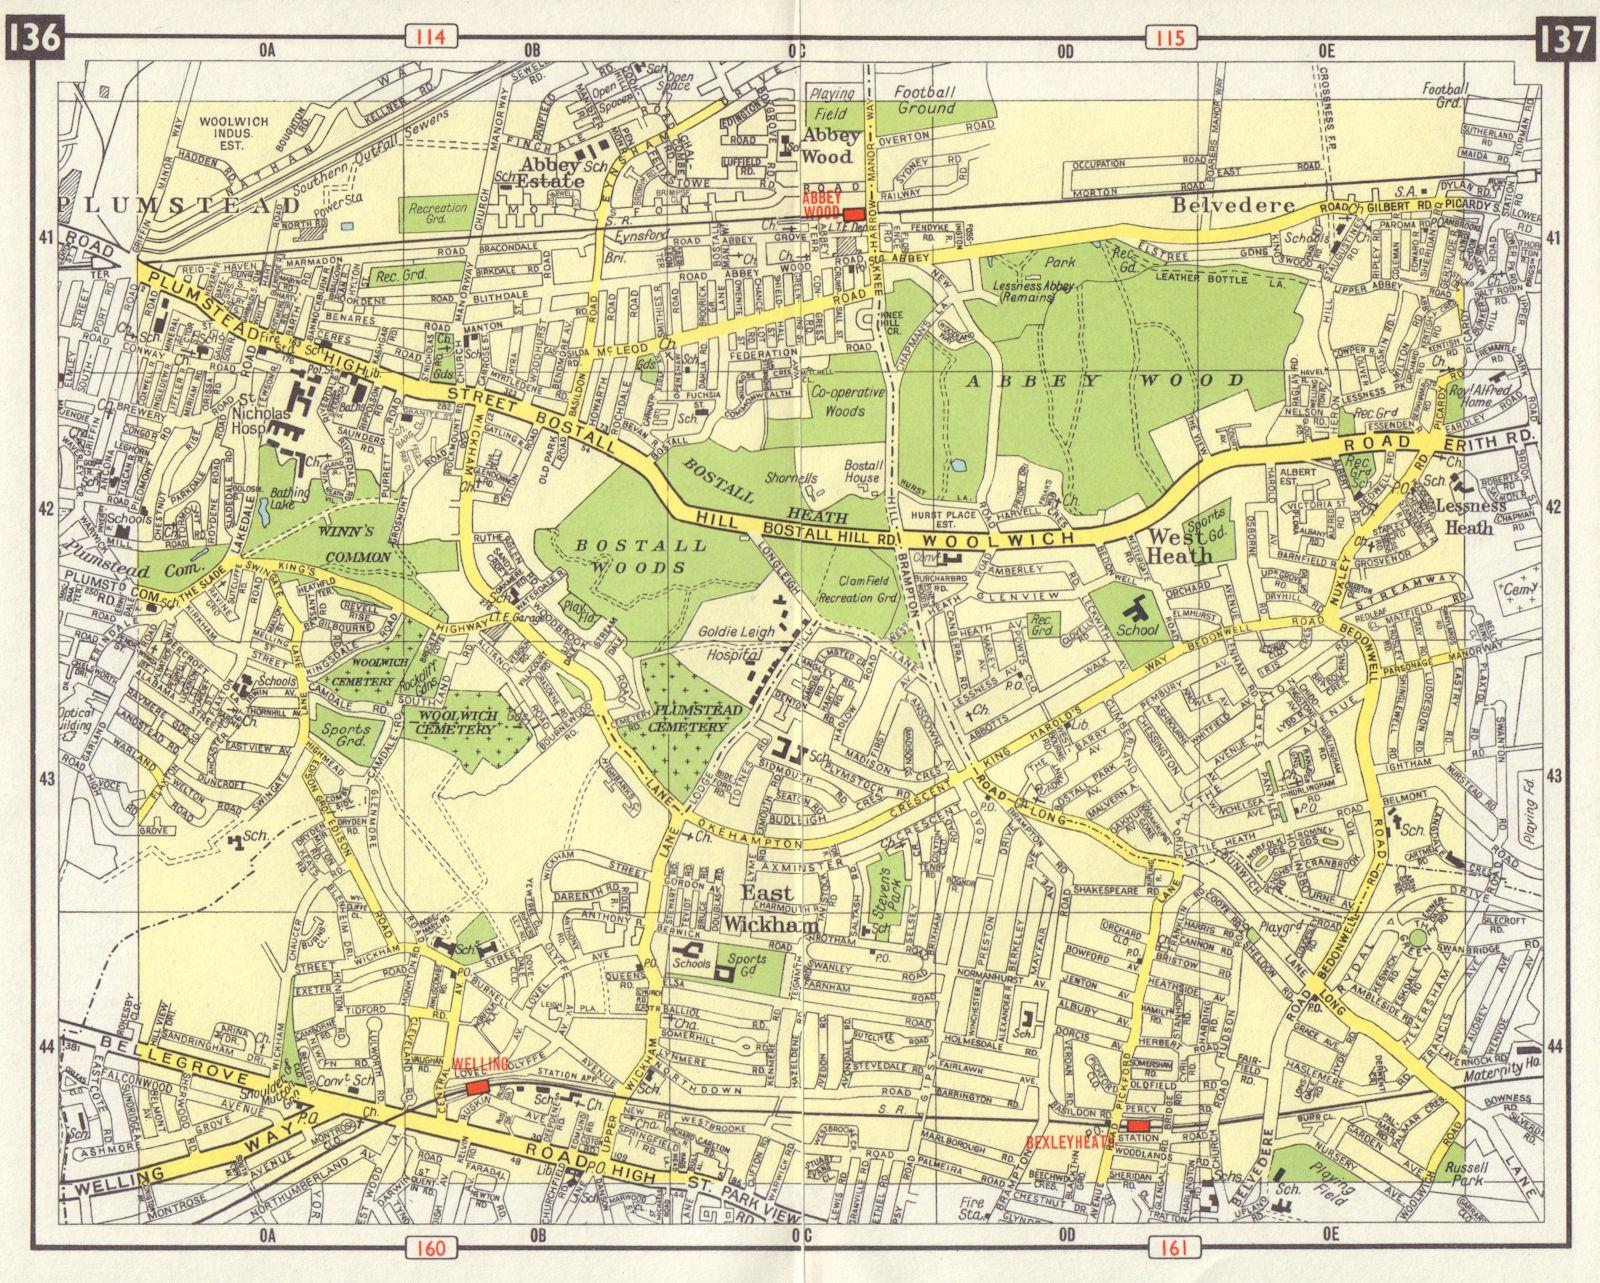 SE LONDON Plumstead Abbey Wood Belvedere East Wickham Bexleyheath 1965 old map